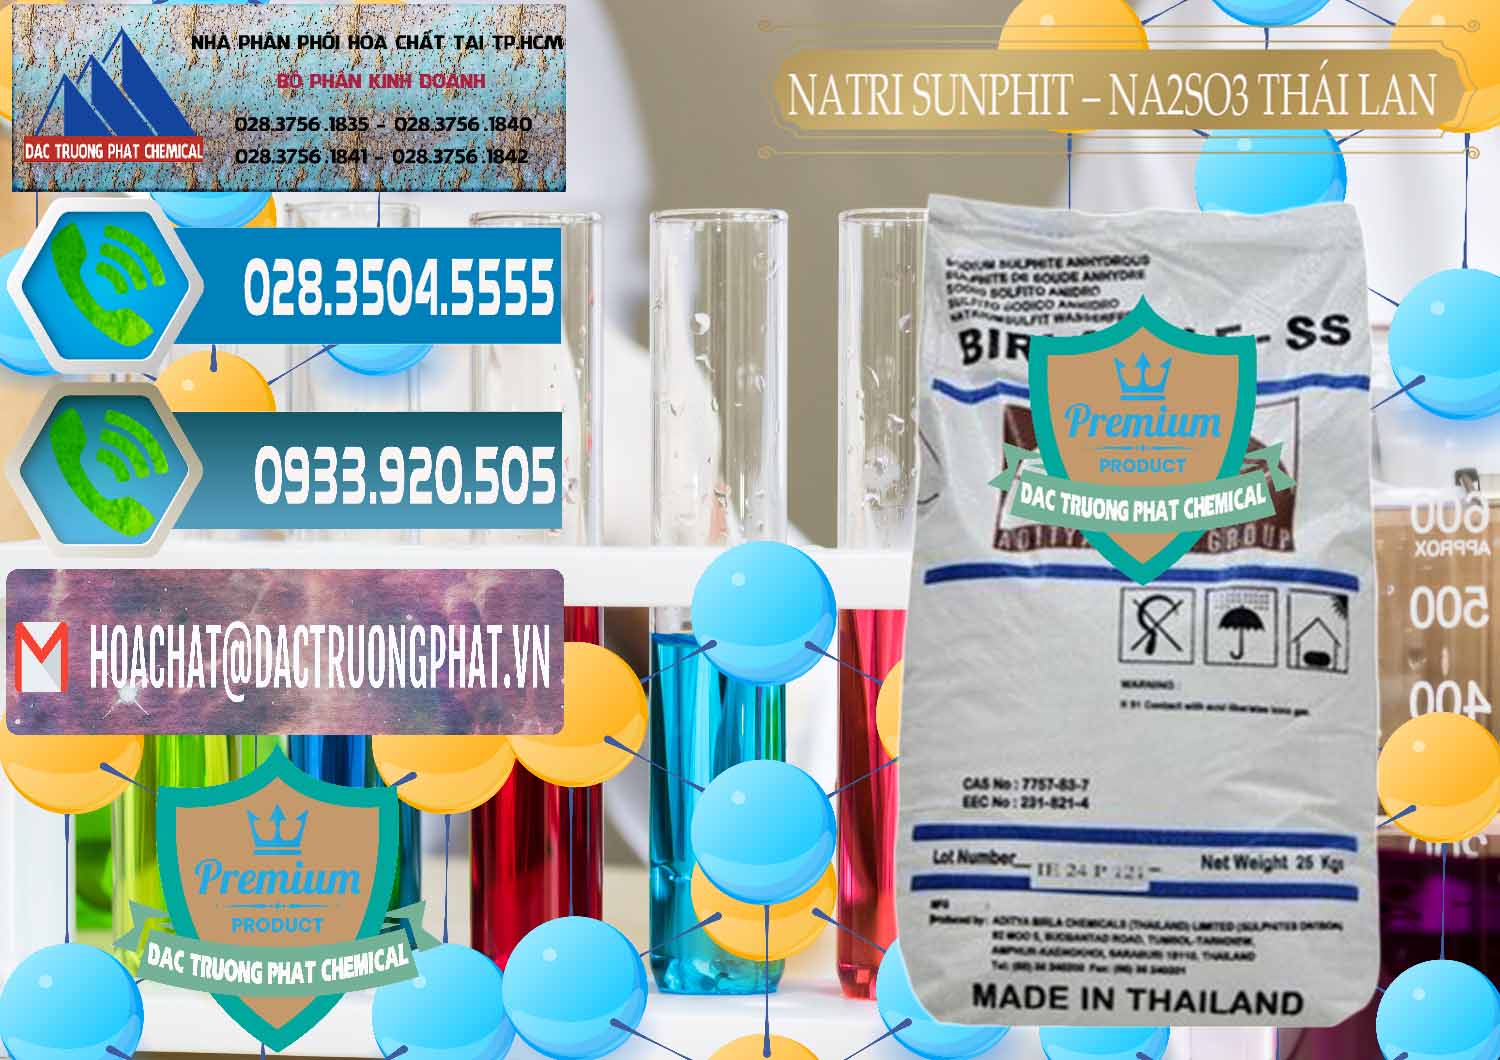 Phân phối - bán Natri Sunphit - NA2SO3 Thái Lan - 0105 - Nhà phân phối ( cung cấp ) hóa chất tại TP.HCM - congtyhoachat.net